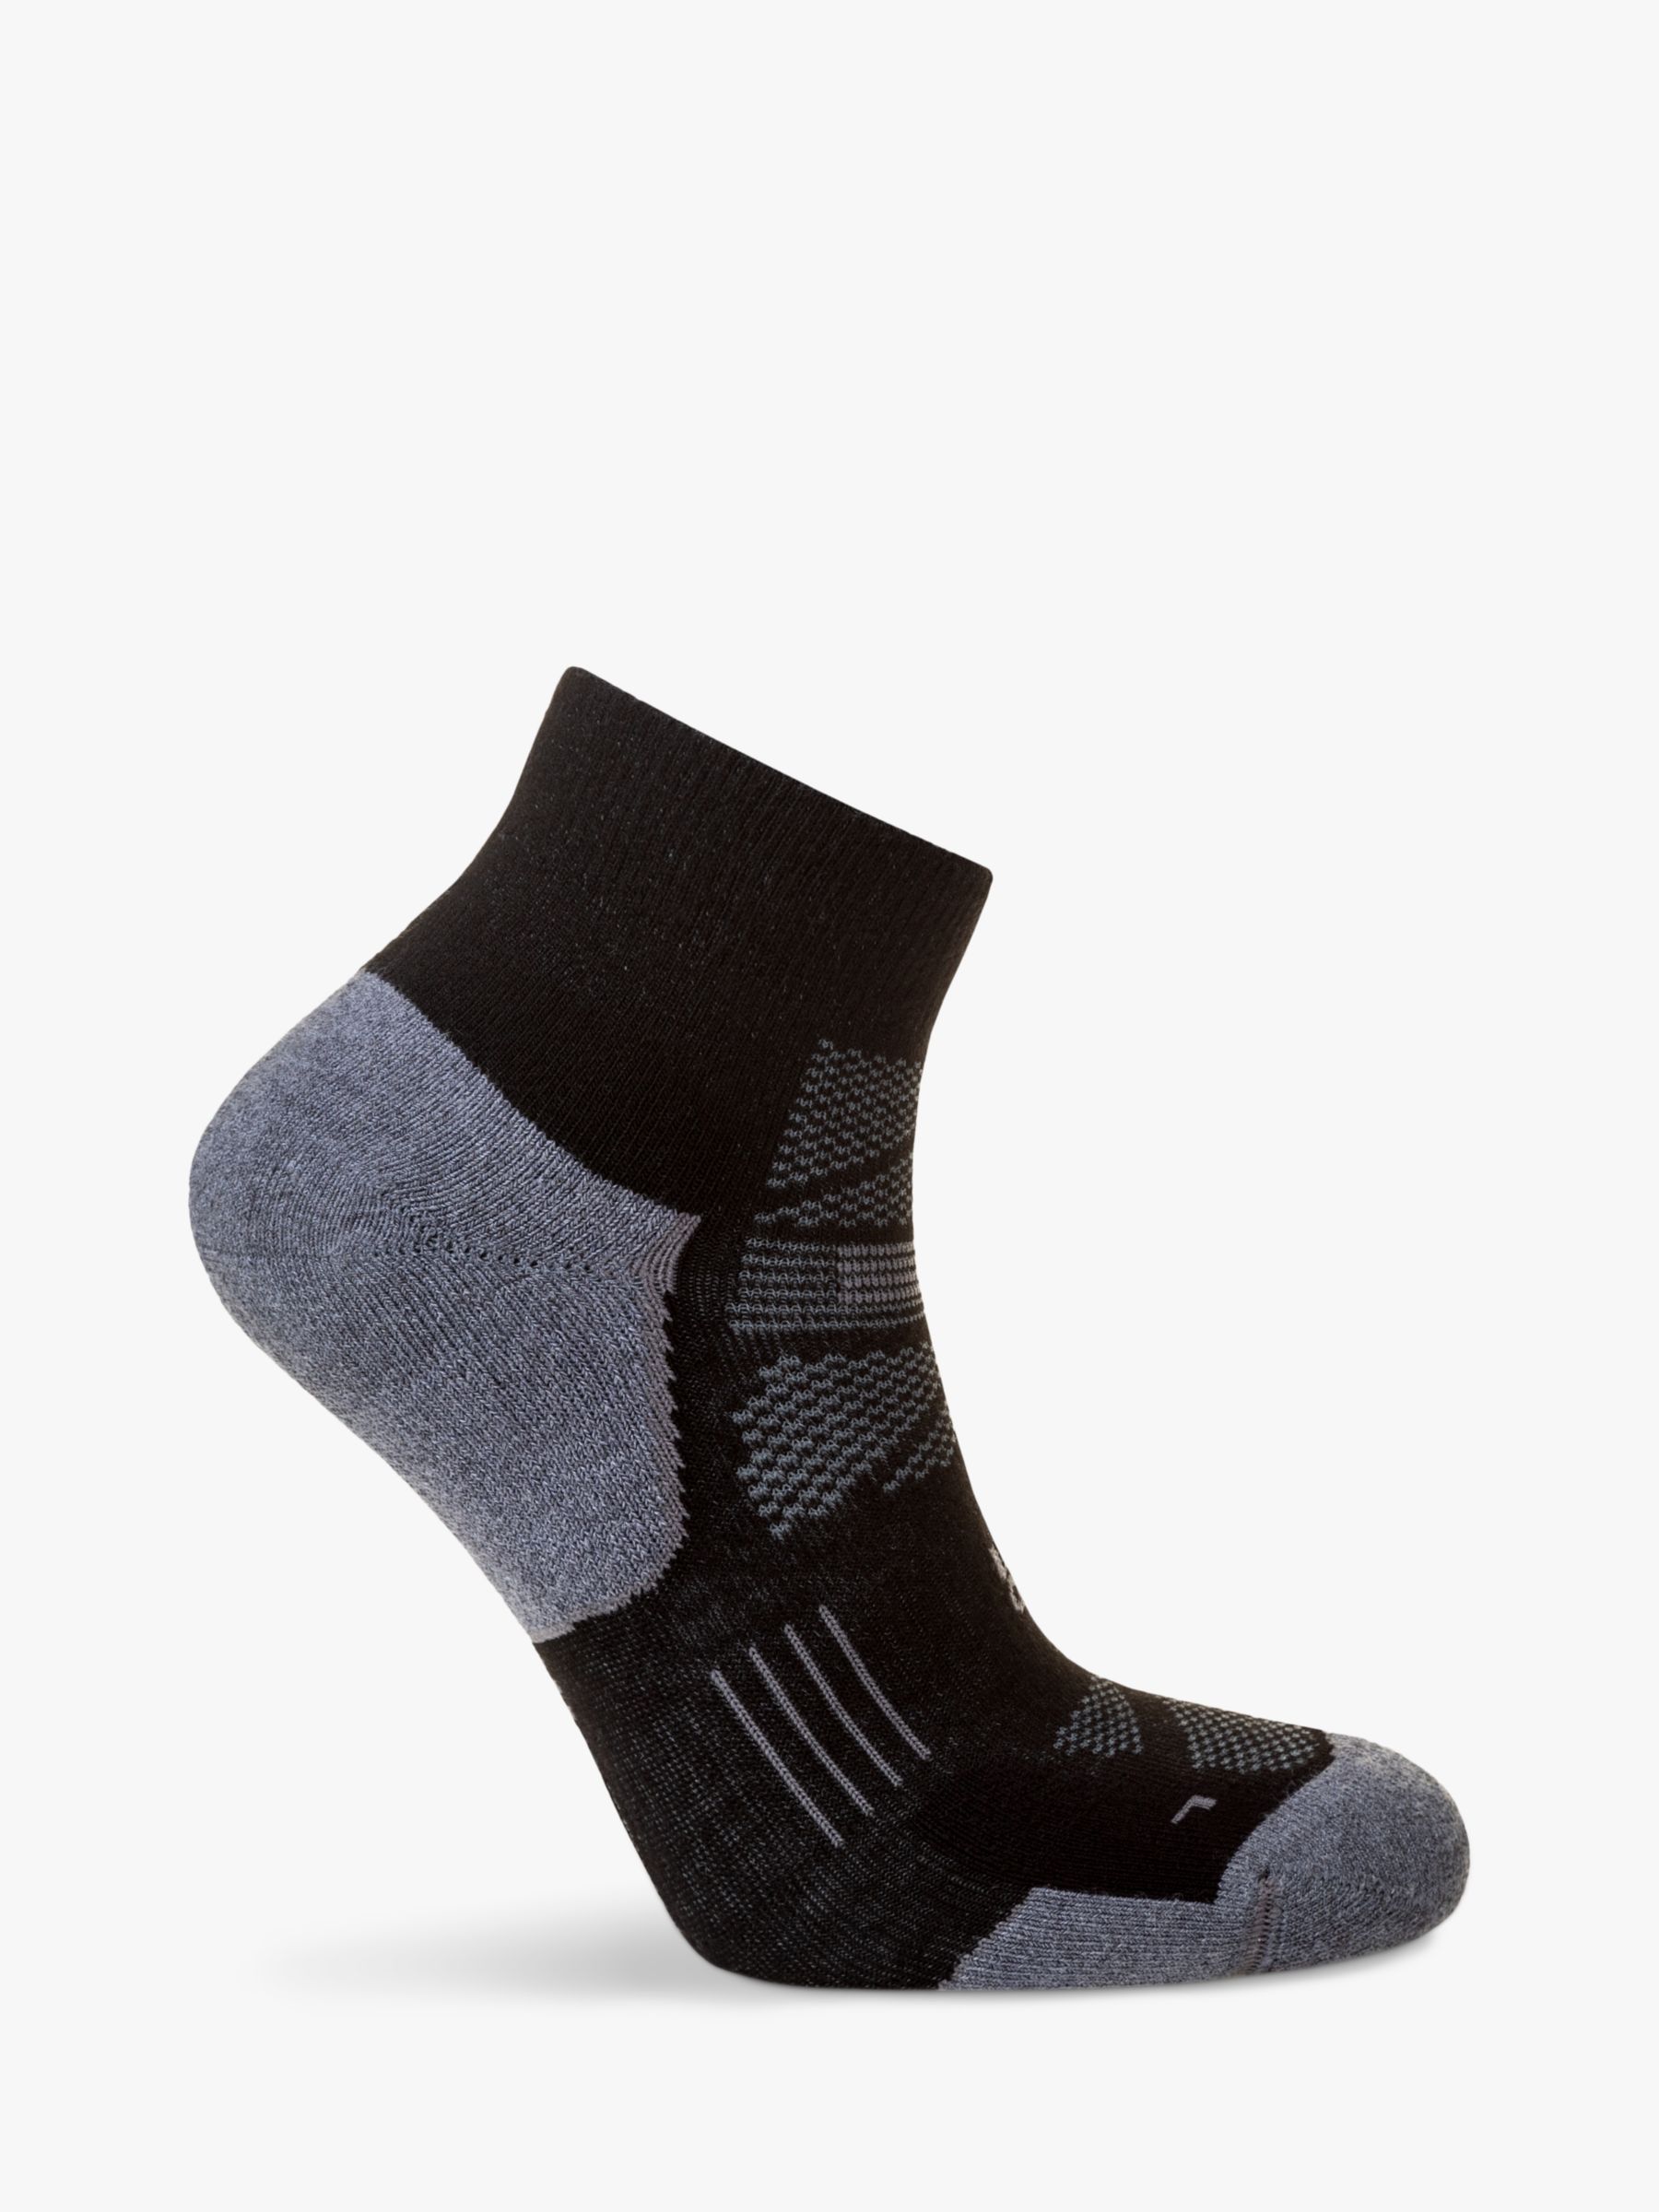 Hilly Supreme Anklet Running Socks, Black/Grey, S